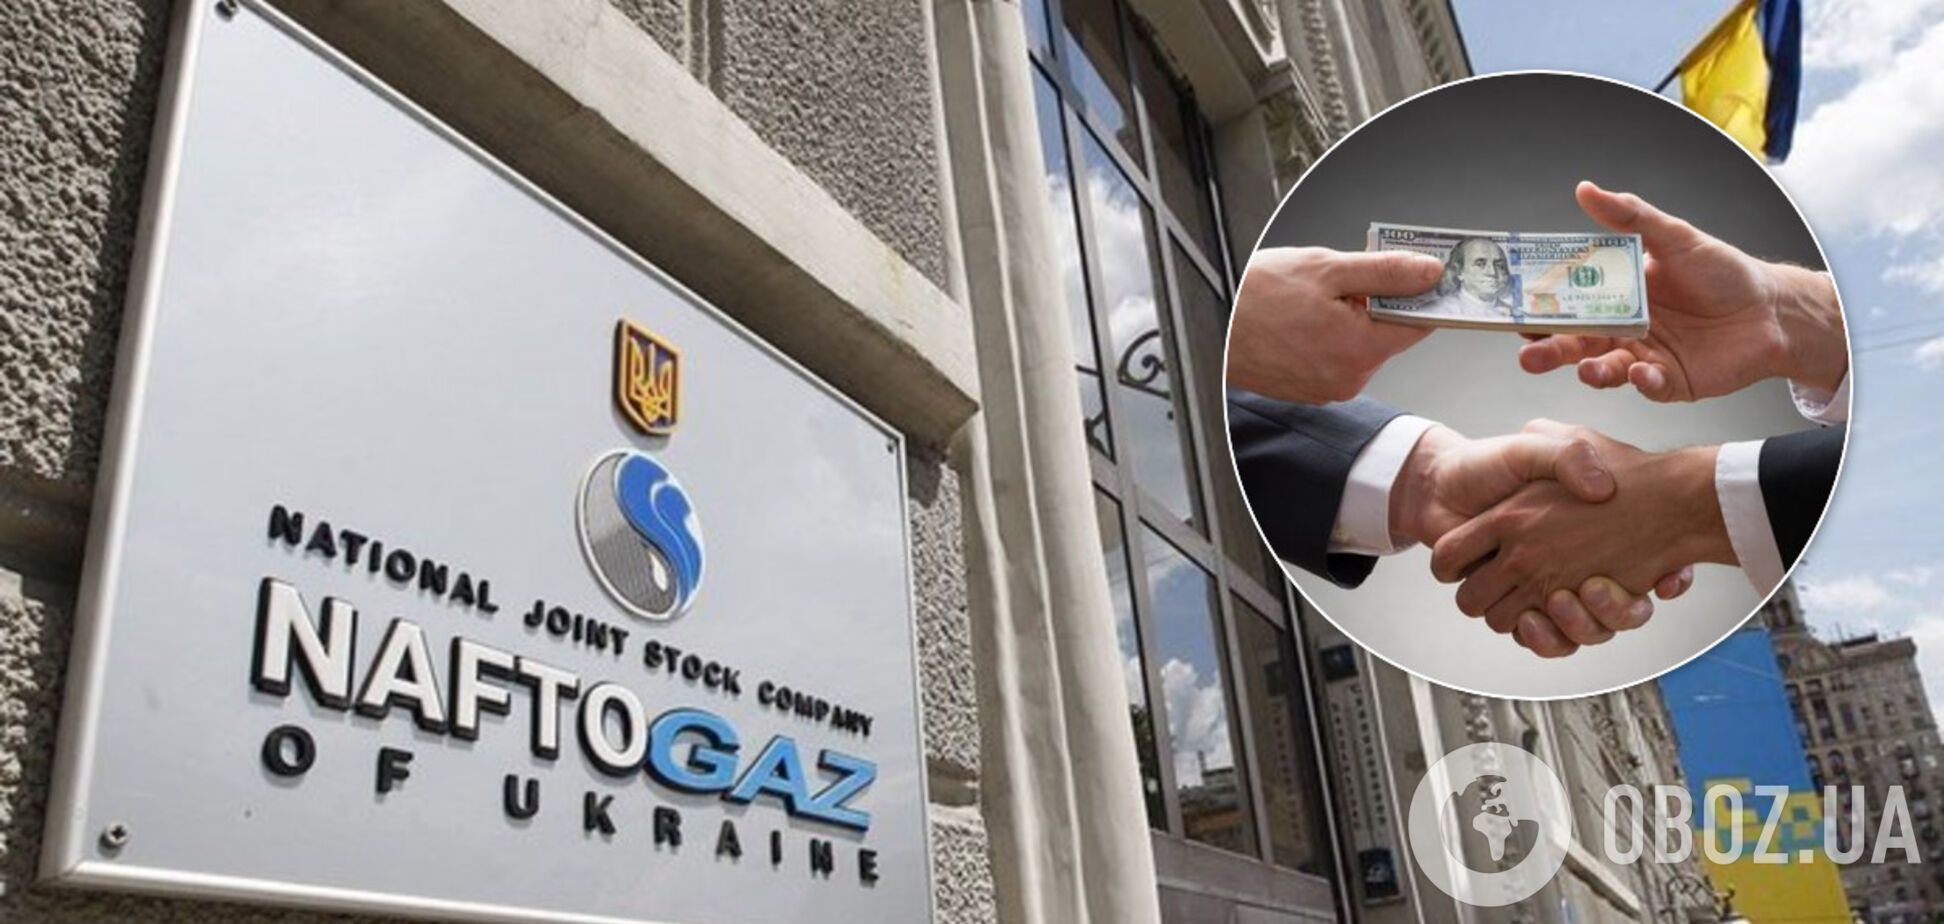 Уволенный топ-менеджер 'Нафтогаза' рассказал о масштабной коррупции в компании